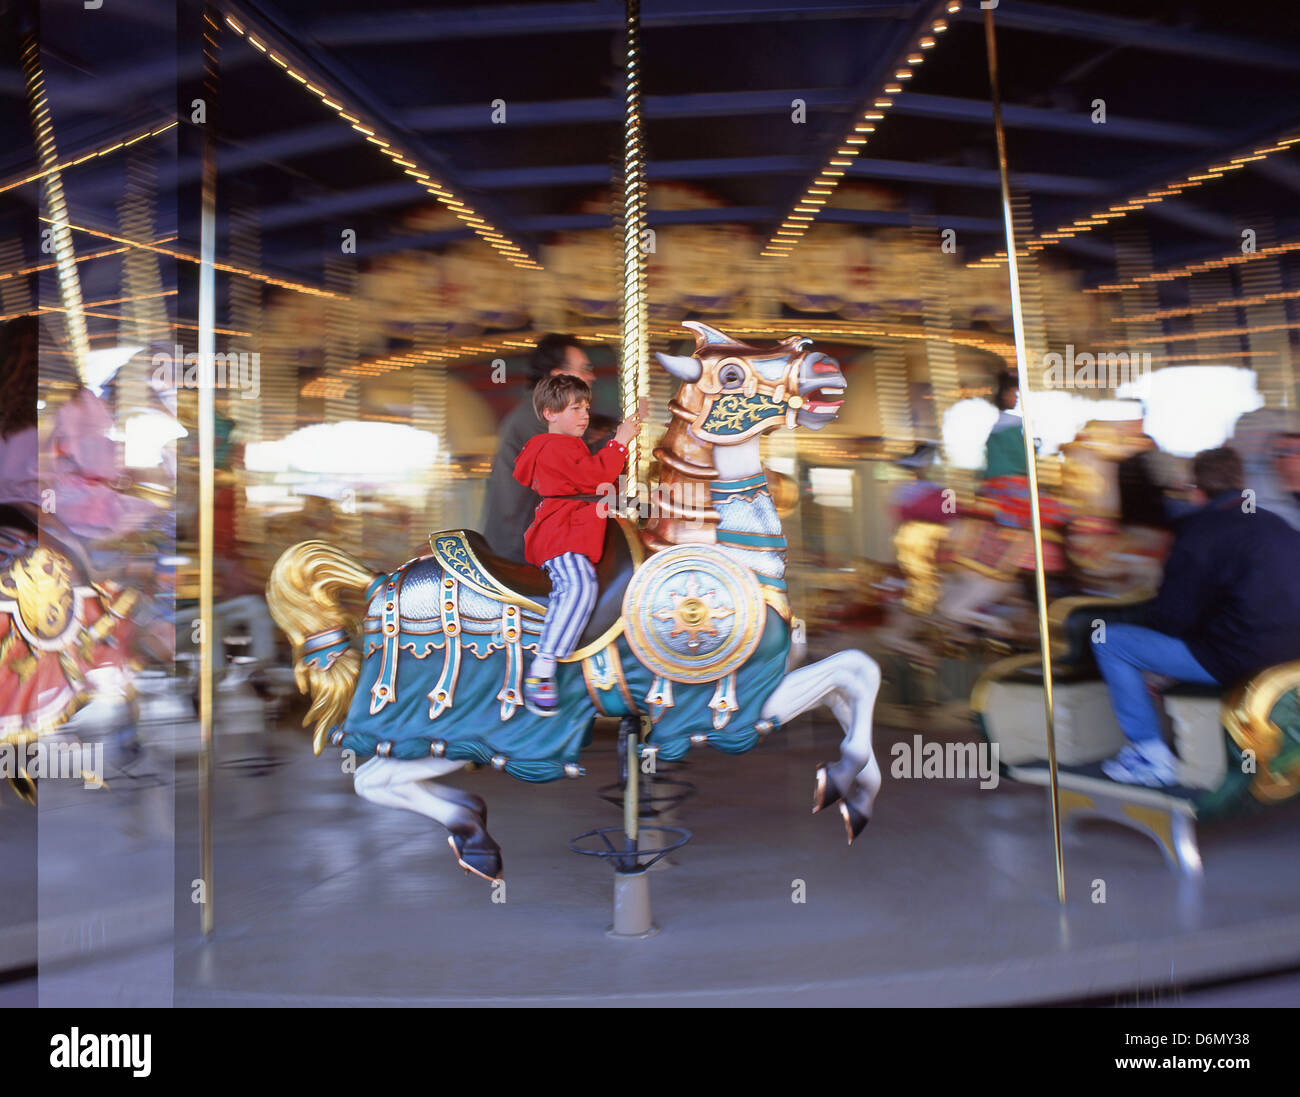 Jeune garçon sur carousel, Fantasyland, parc à thème Disneyland Paris, Marne-la-Vallée, Île-de-France, France Banque D'Images